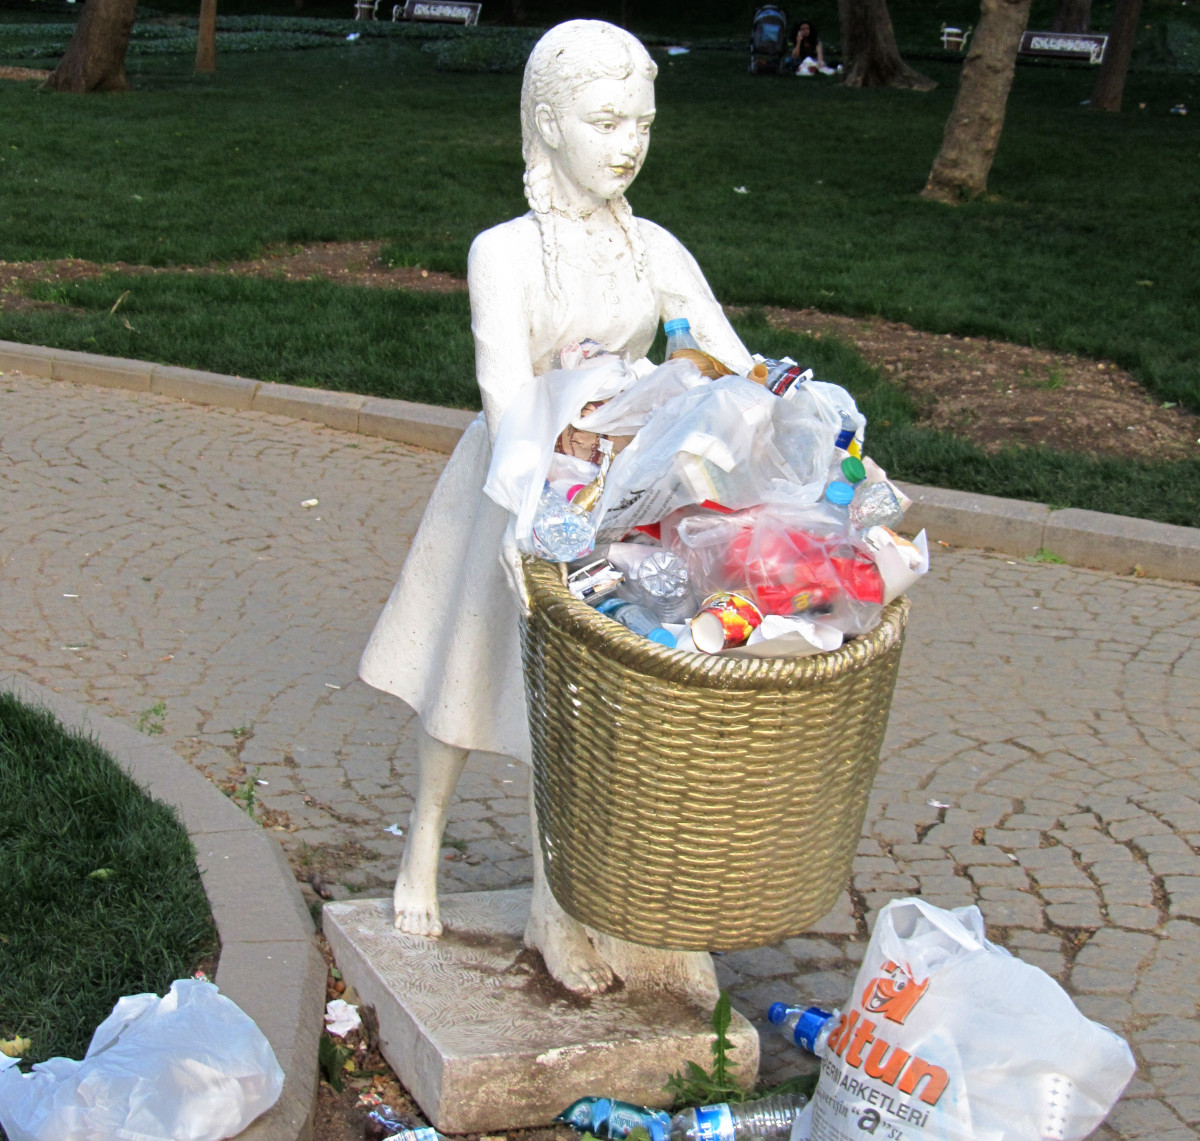 Ein überquellender Mülleimer, der aussieht wie ein Mädchen, das einen Korb hält. Drumherum zahlreicher Plastikmüll